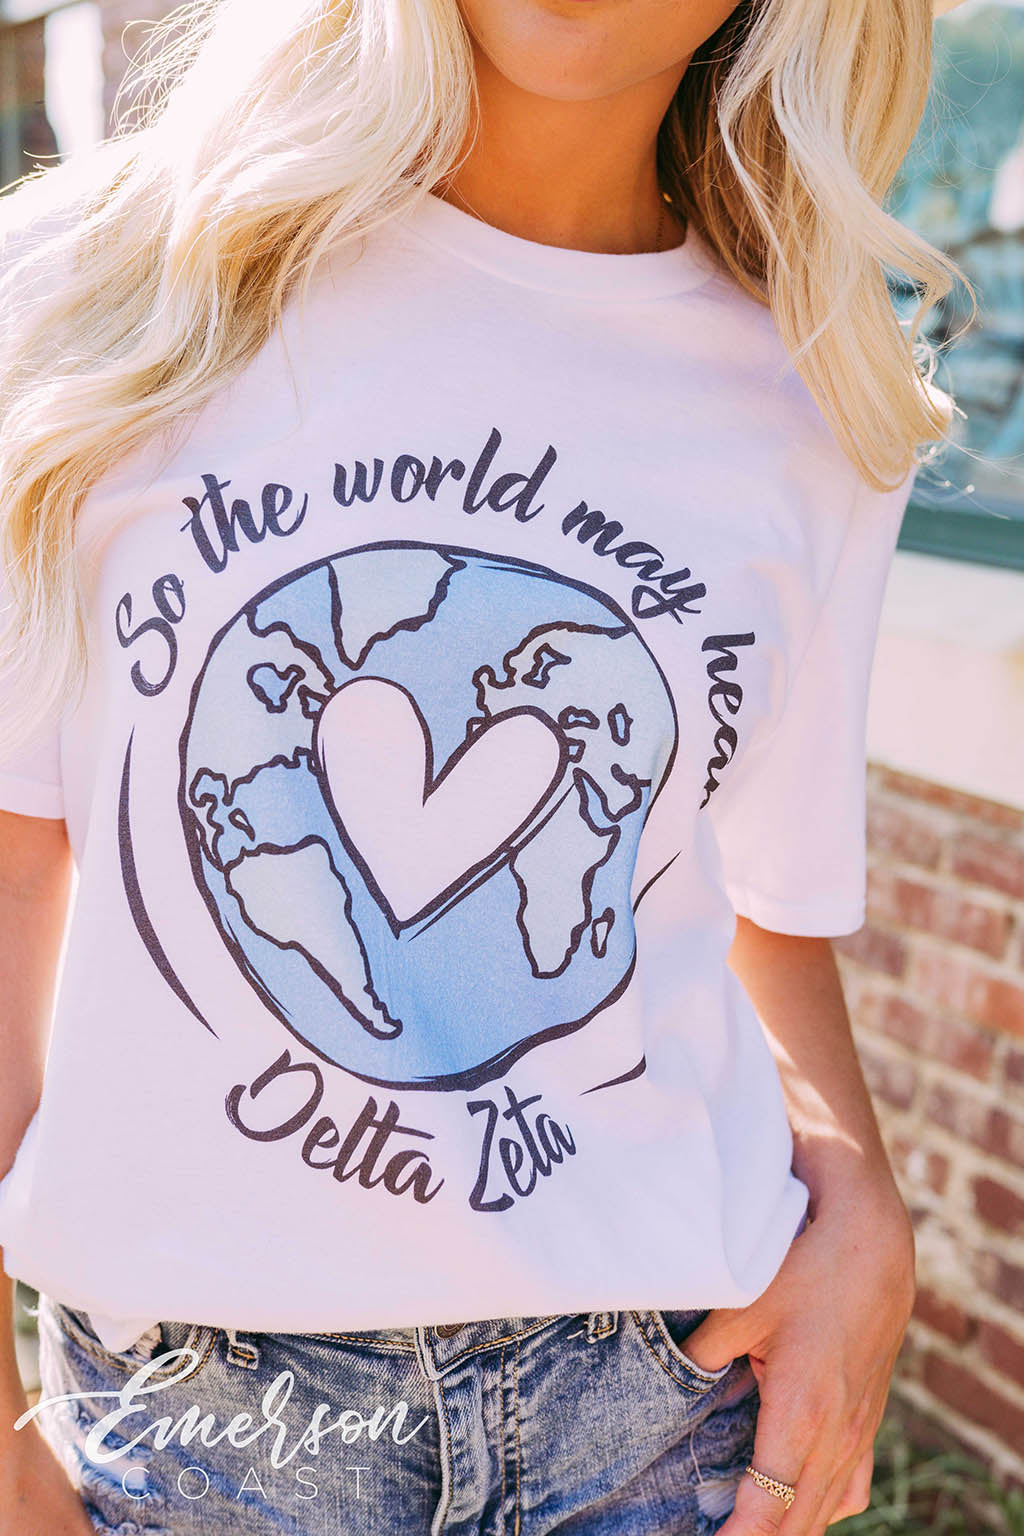 Delta Zeta Philanthropy So The World May Hear Tee